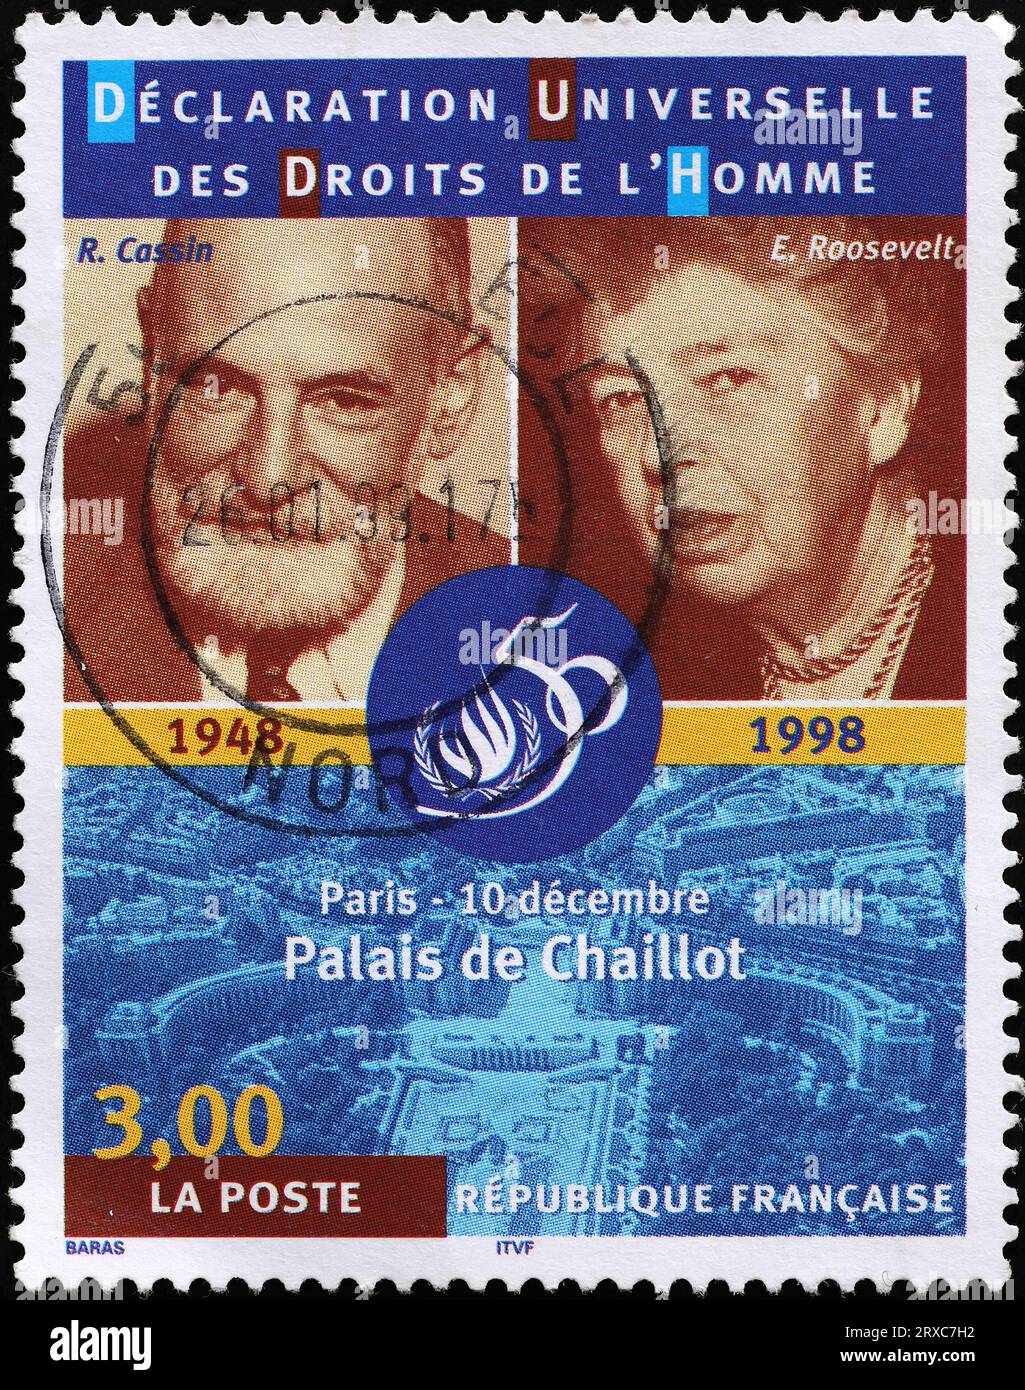 Déclaration universelle des droits de l'homme célébrée sur timbre français Banque D'Images